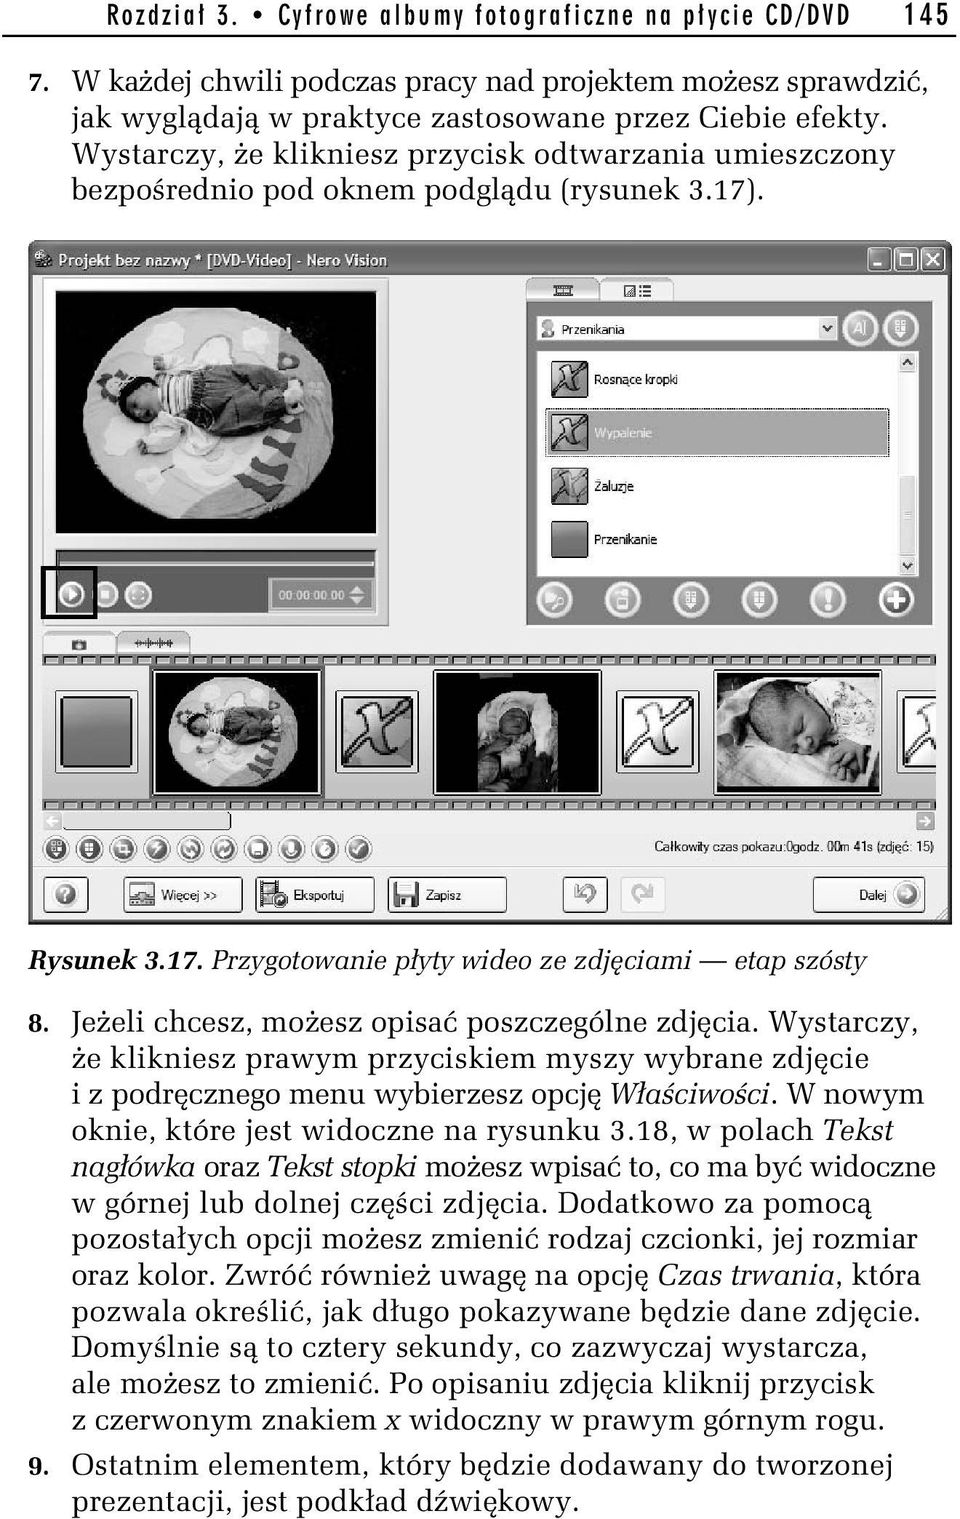 Jeżeli chcesz, możesz opisać poszczególne zdjęcia. Wystarczy, że klikniesz prawym przyciskiem myszy wybrane zdjęcie i z podręcznego menu wybierzesz opcję Właściwości.